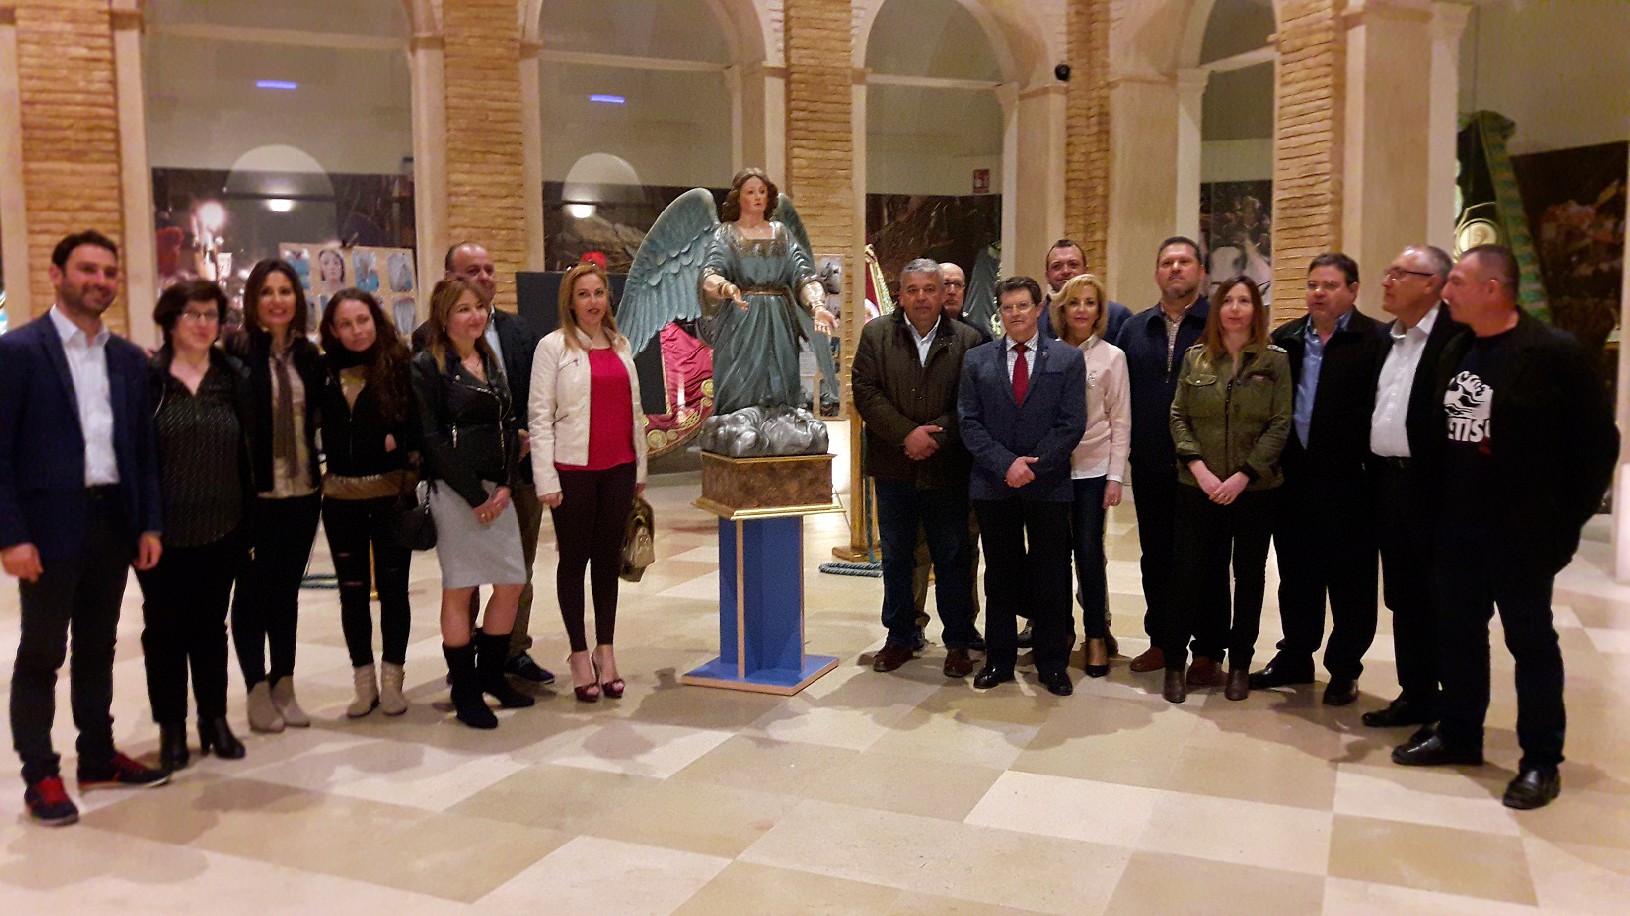 El Alcalde entrega al Paso Azul un ángel de los años 20 restaurado por los alumnos del taller de Talla de Elementos Decorativos en Madera desarrollado por el Ayuntamiento